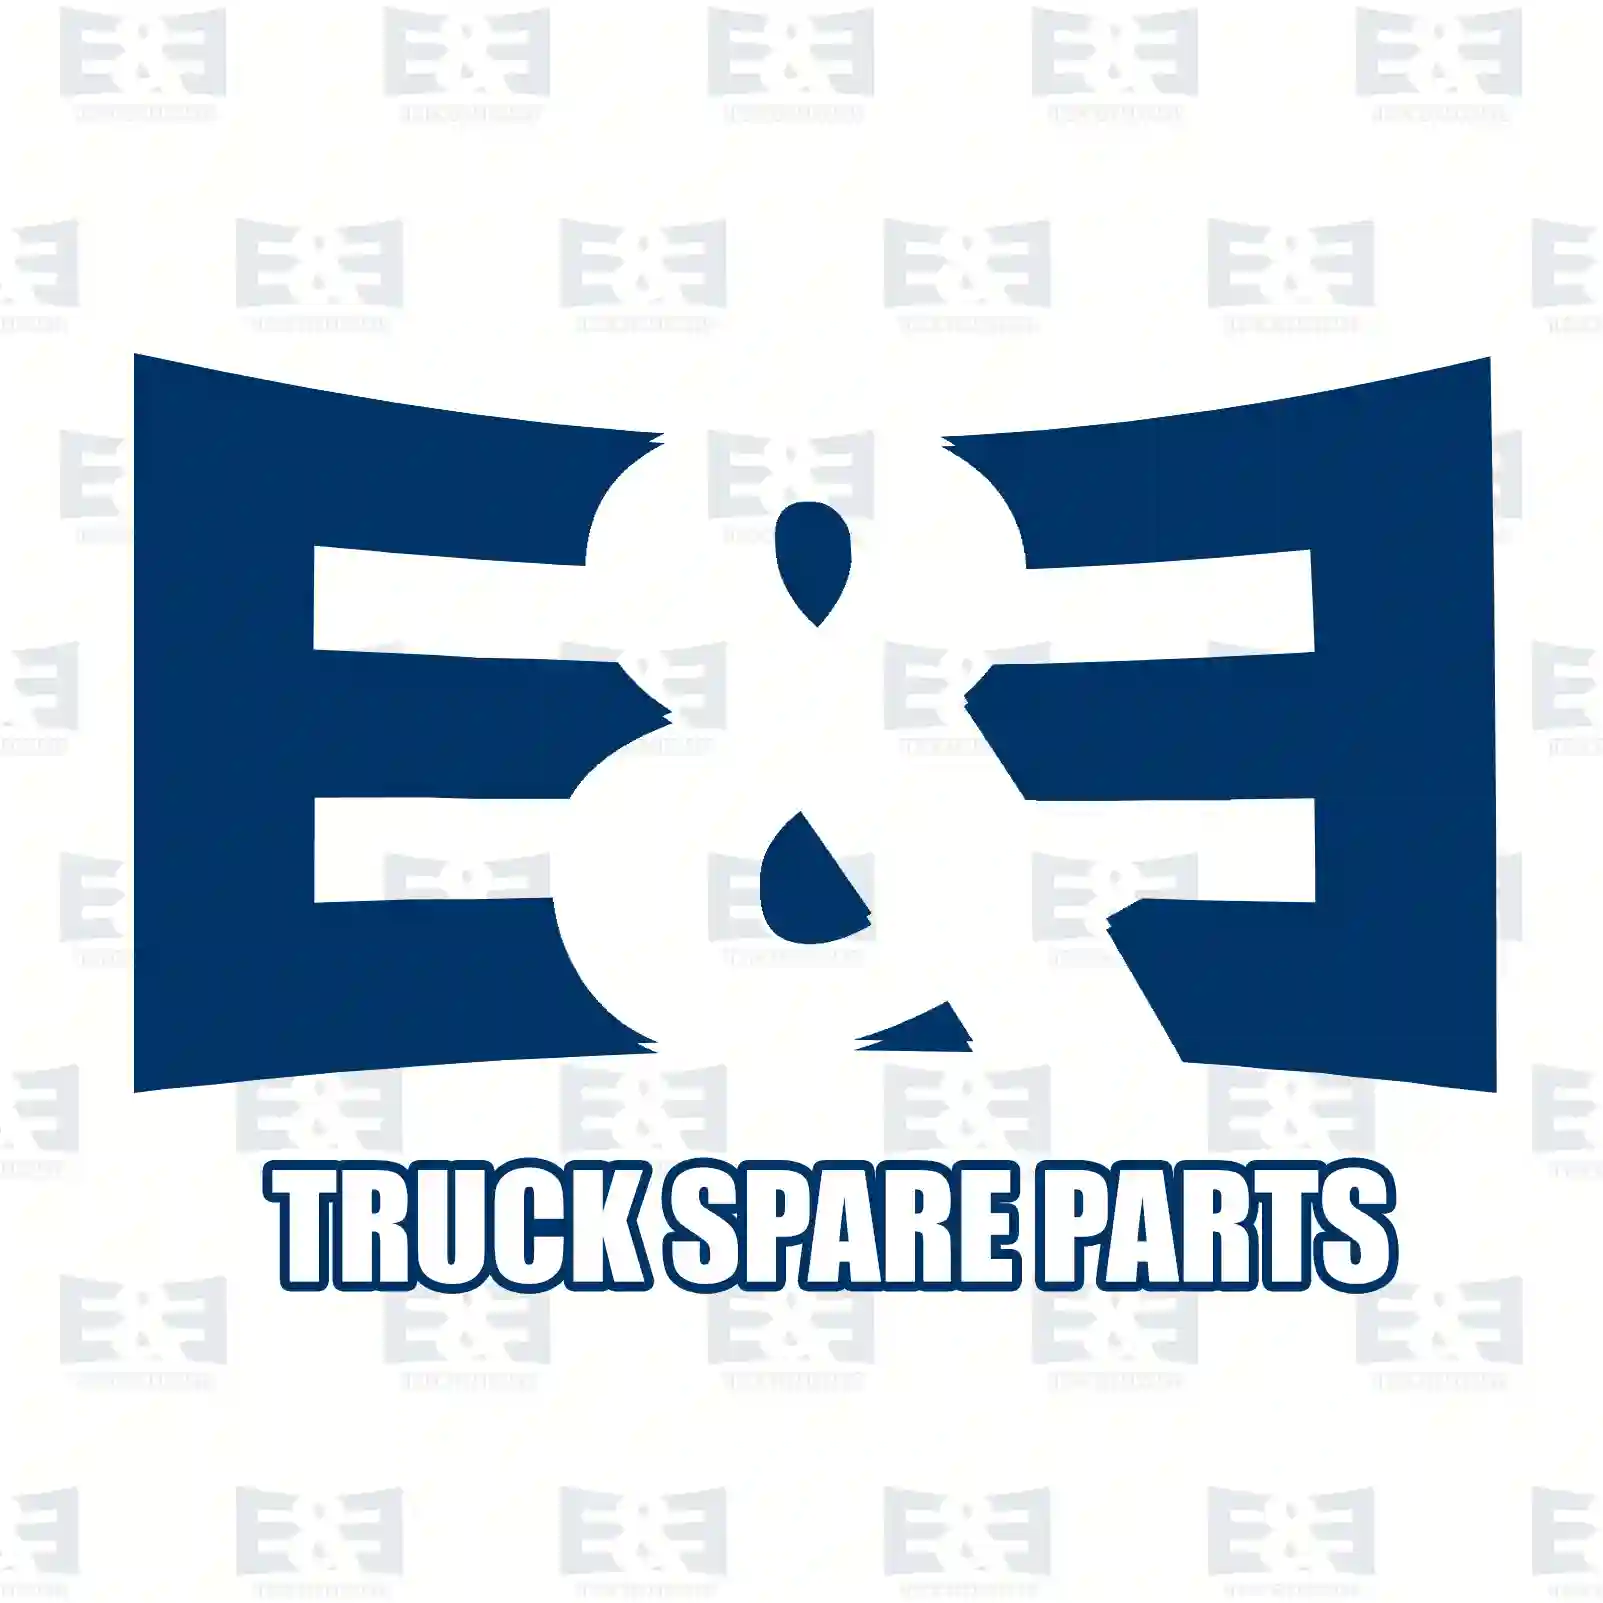 Clutch cover, 2E2288709, 21945331 ||  2E2288709 E&E Truck Spare Parts | Truck Spare Parts, Auotomotive Spare Parts Clutch cover, 2E2288709, 21945331 ||  2E2288709 E&E Truck Spare Parts | Truck Spare Parts, Auotomotive Spare Parts